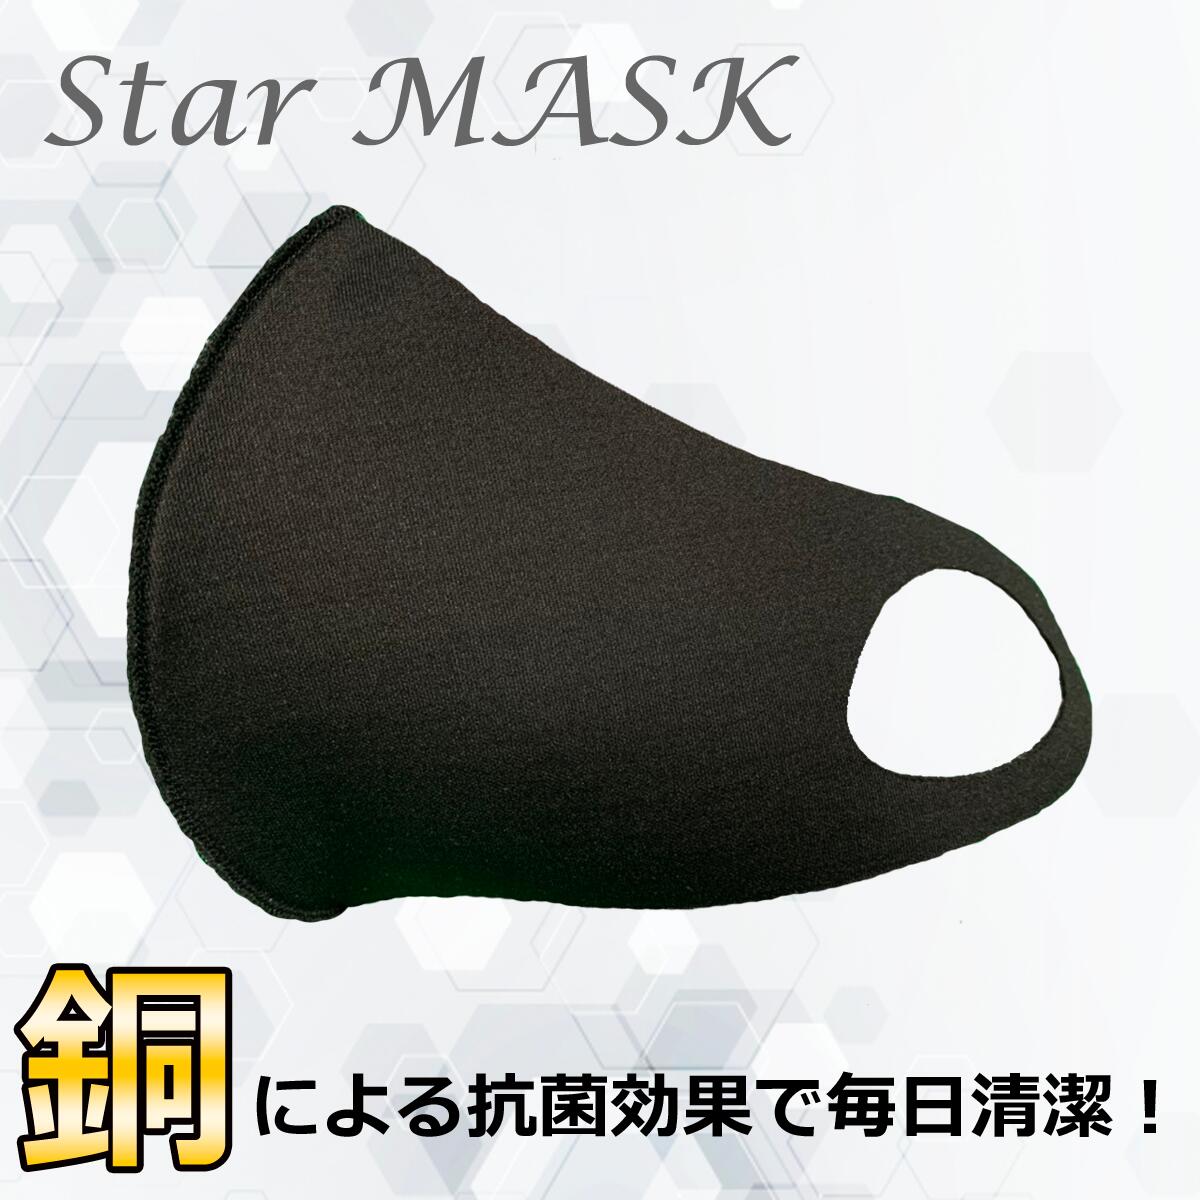 【冬の寒さ対策】韓国で話題のGOGO789ブランドの大人気商品、「あったか銅マスク」StarMASK